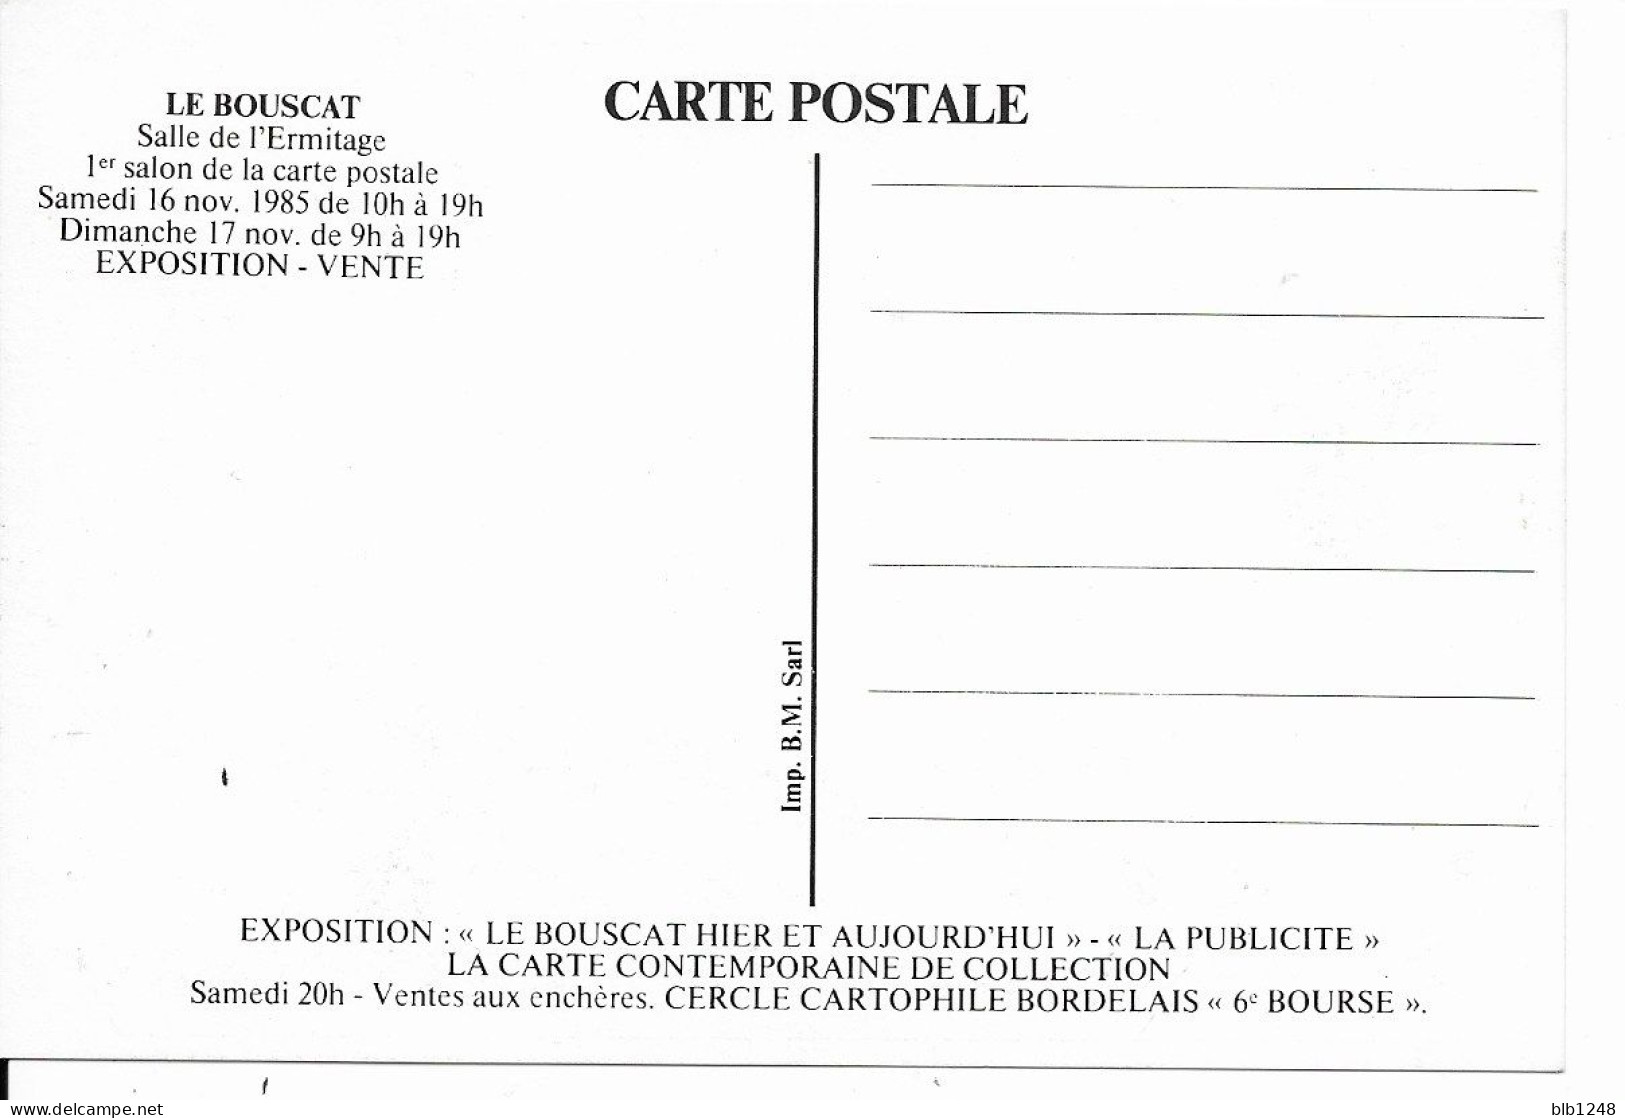 Bourses & Salons De Collections Le Bouscat 1er Salon De La Carte Postale 1985 Programme Plaza De Toros 1930 - Borse E Saloni Del Collezionismo